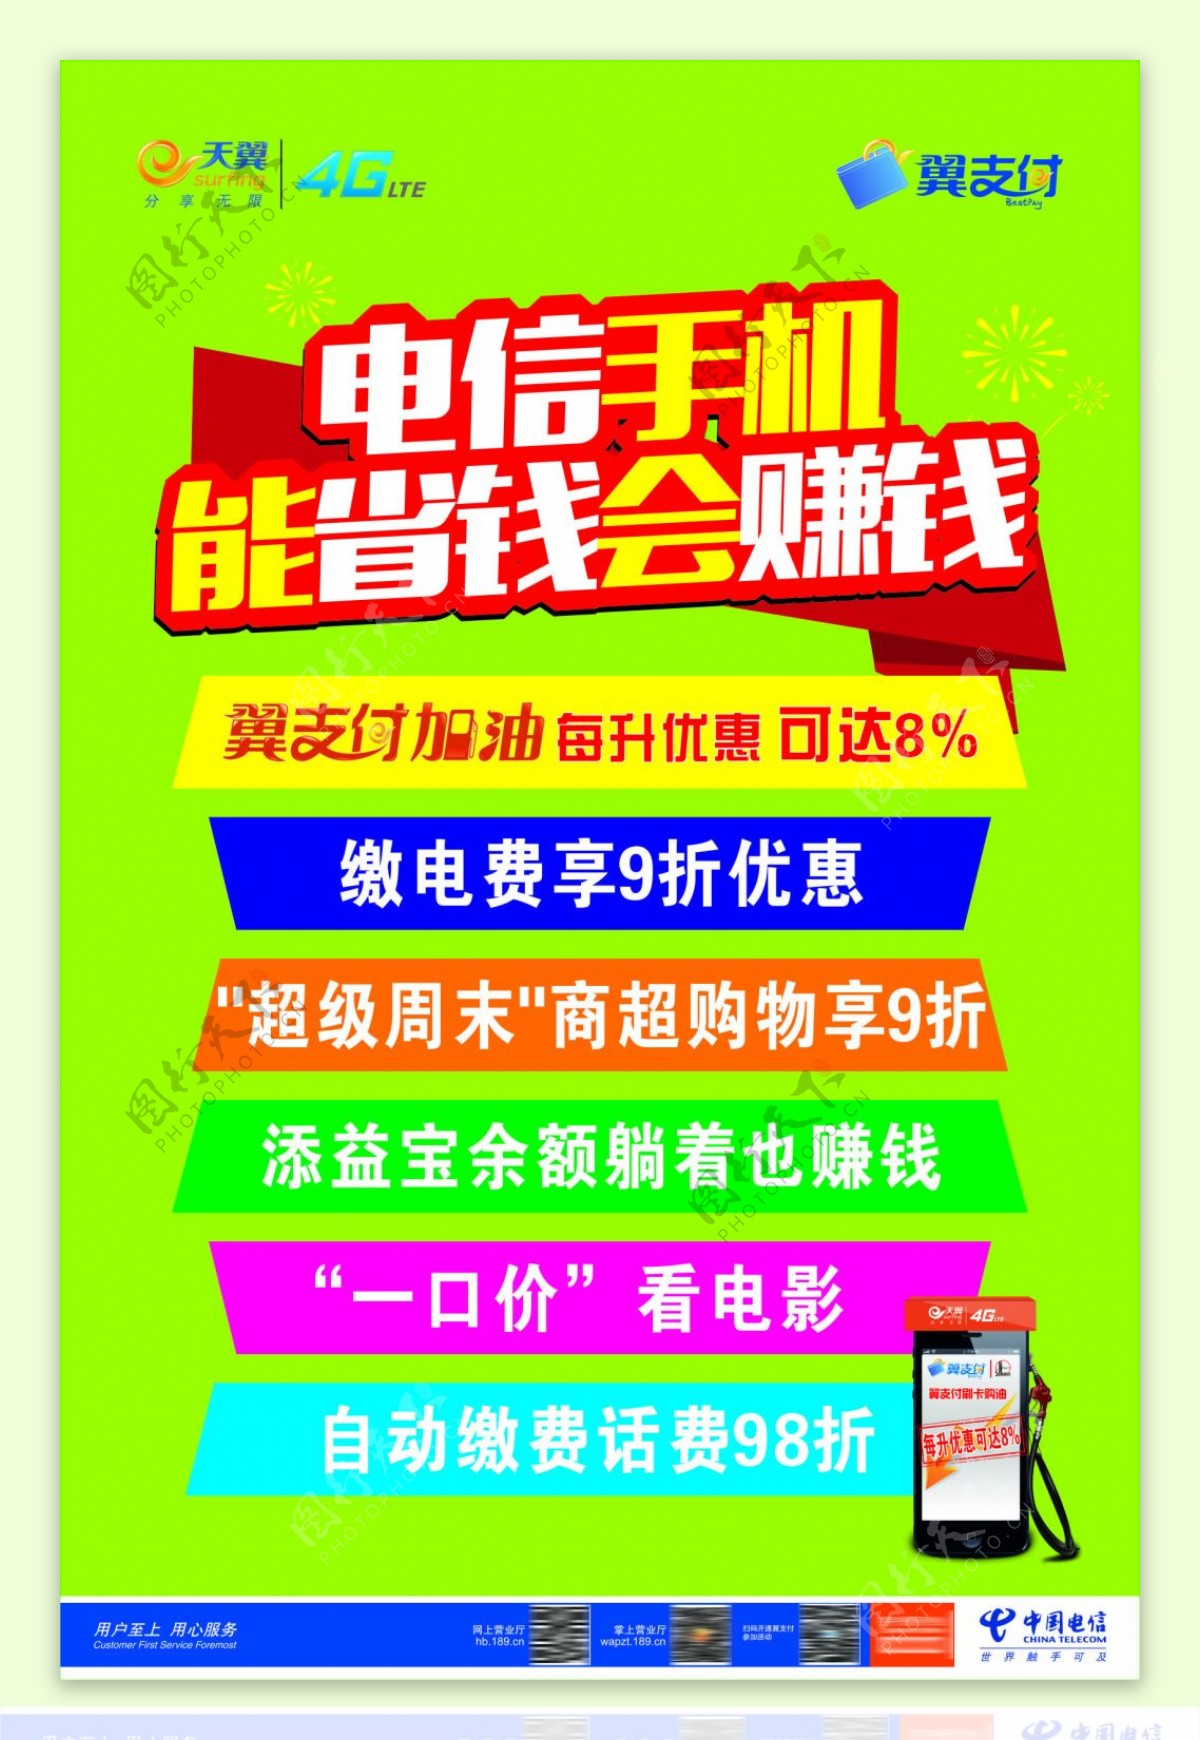 中国电信翼支付宣传海报